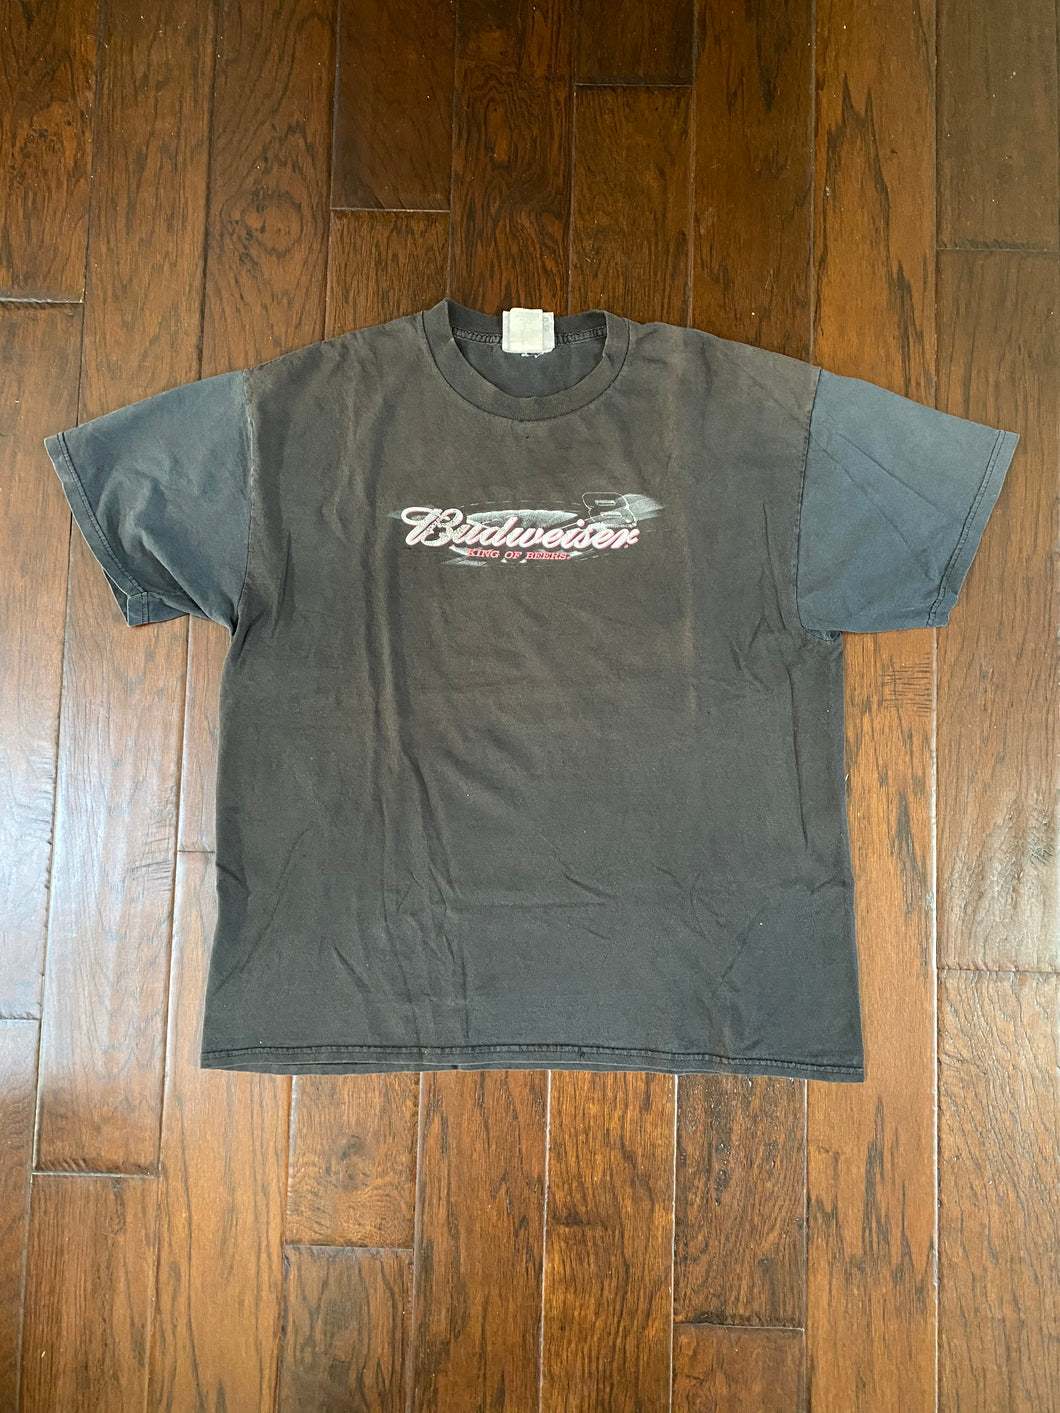 Dale Earnhardt Jr. #8 Budweiser 2000’s Vintage Distressed T-shirt